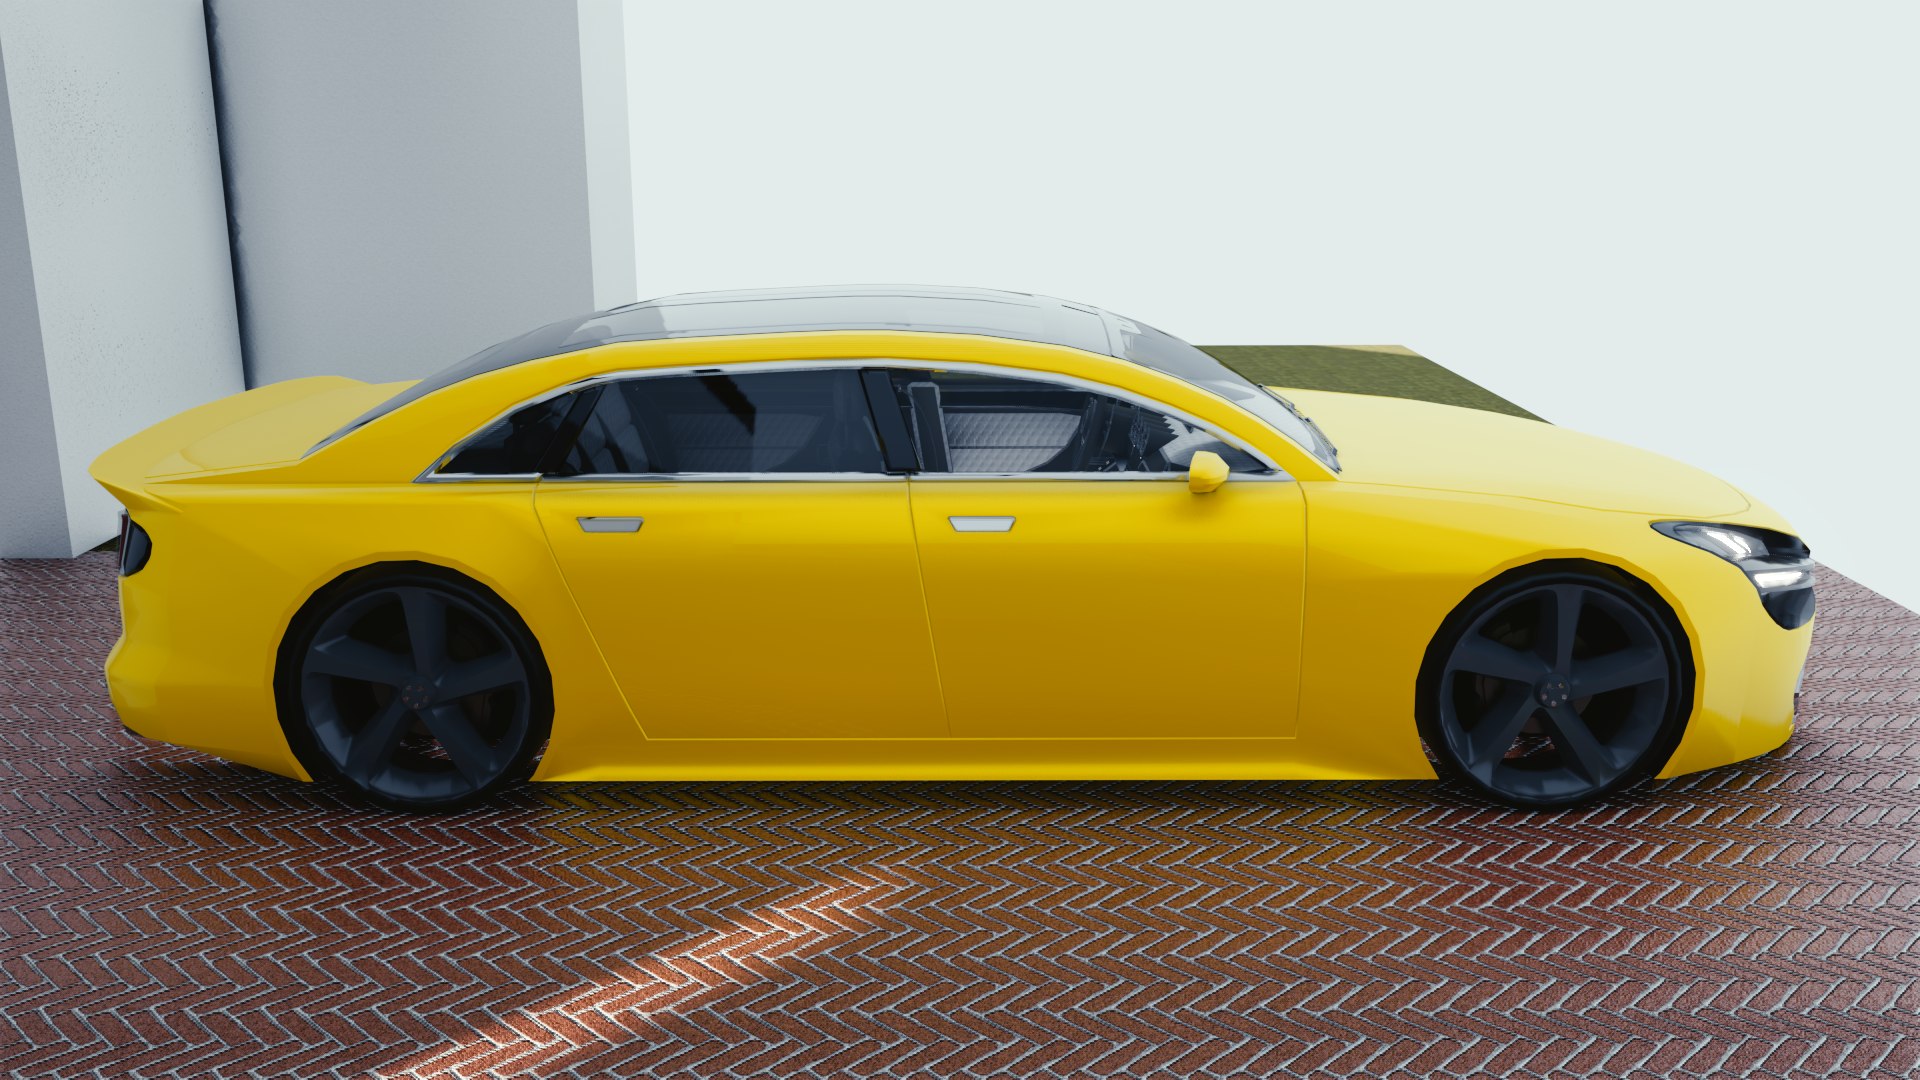 Free 3D car blender eevee brandless model - TurboSquid 1398140